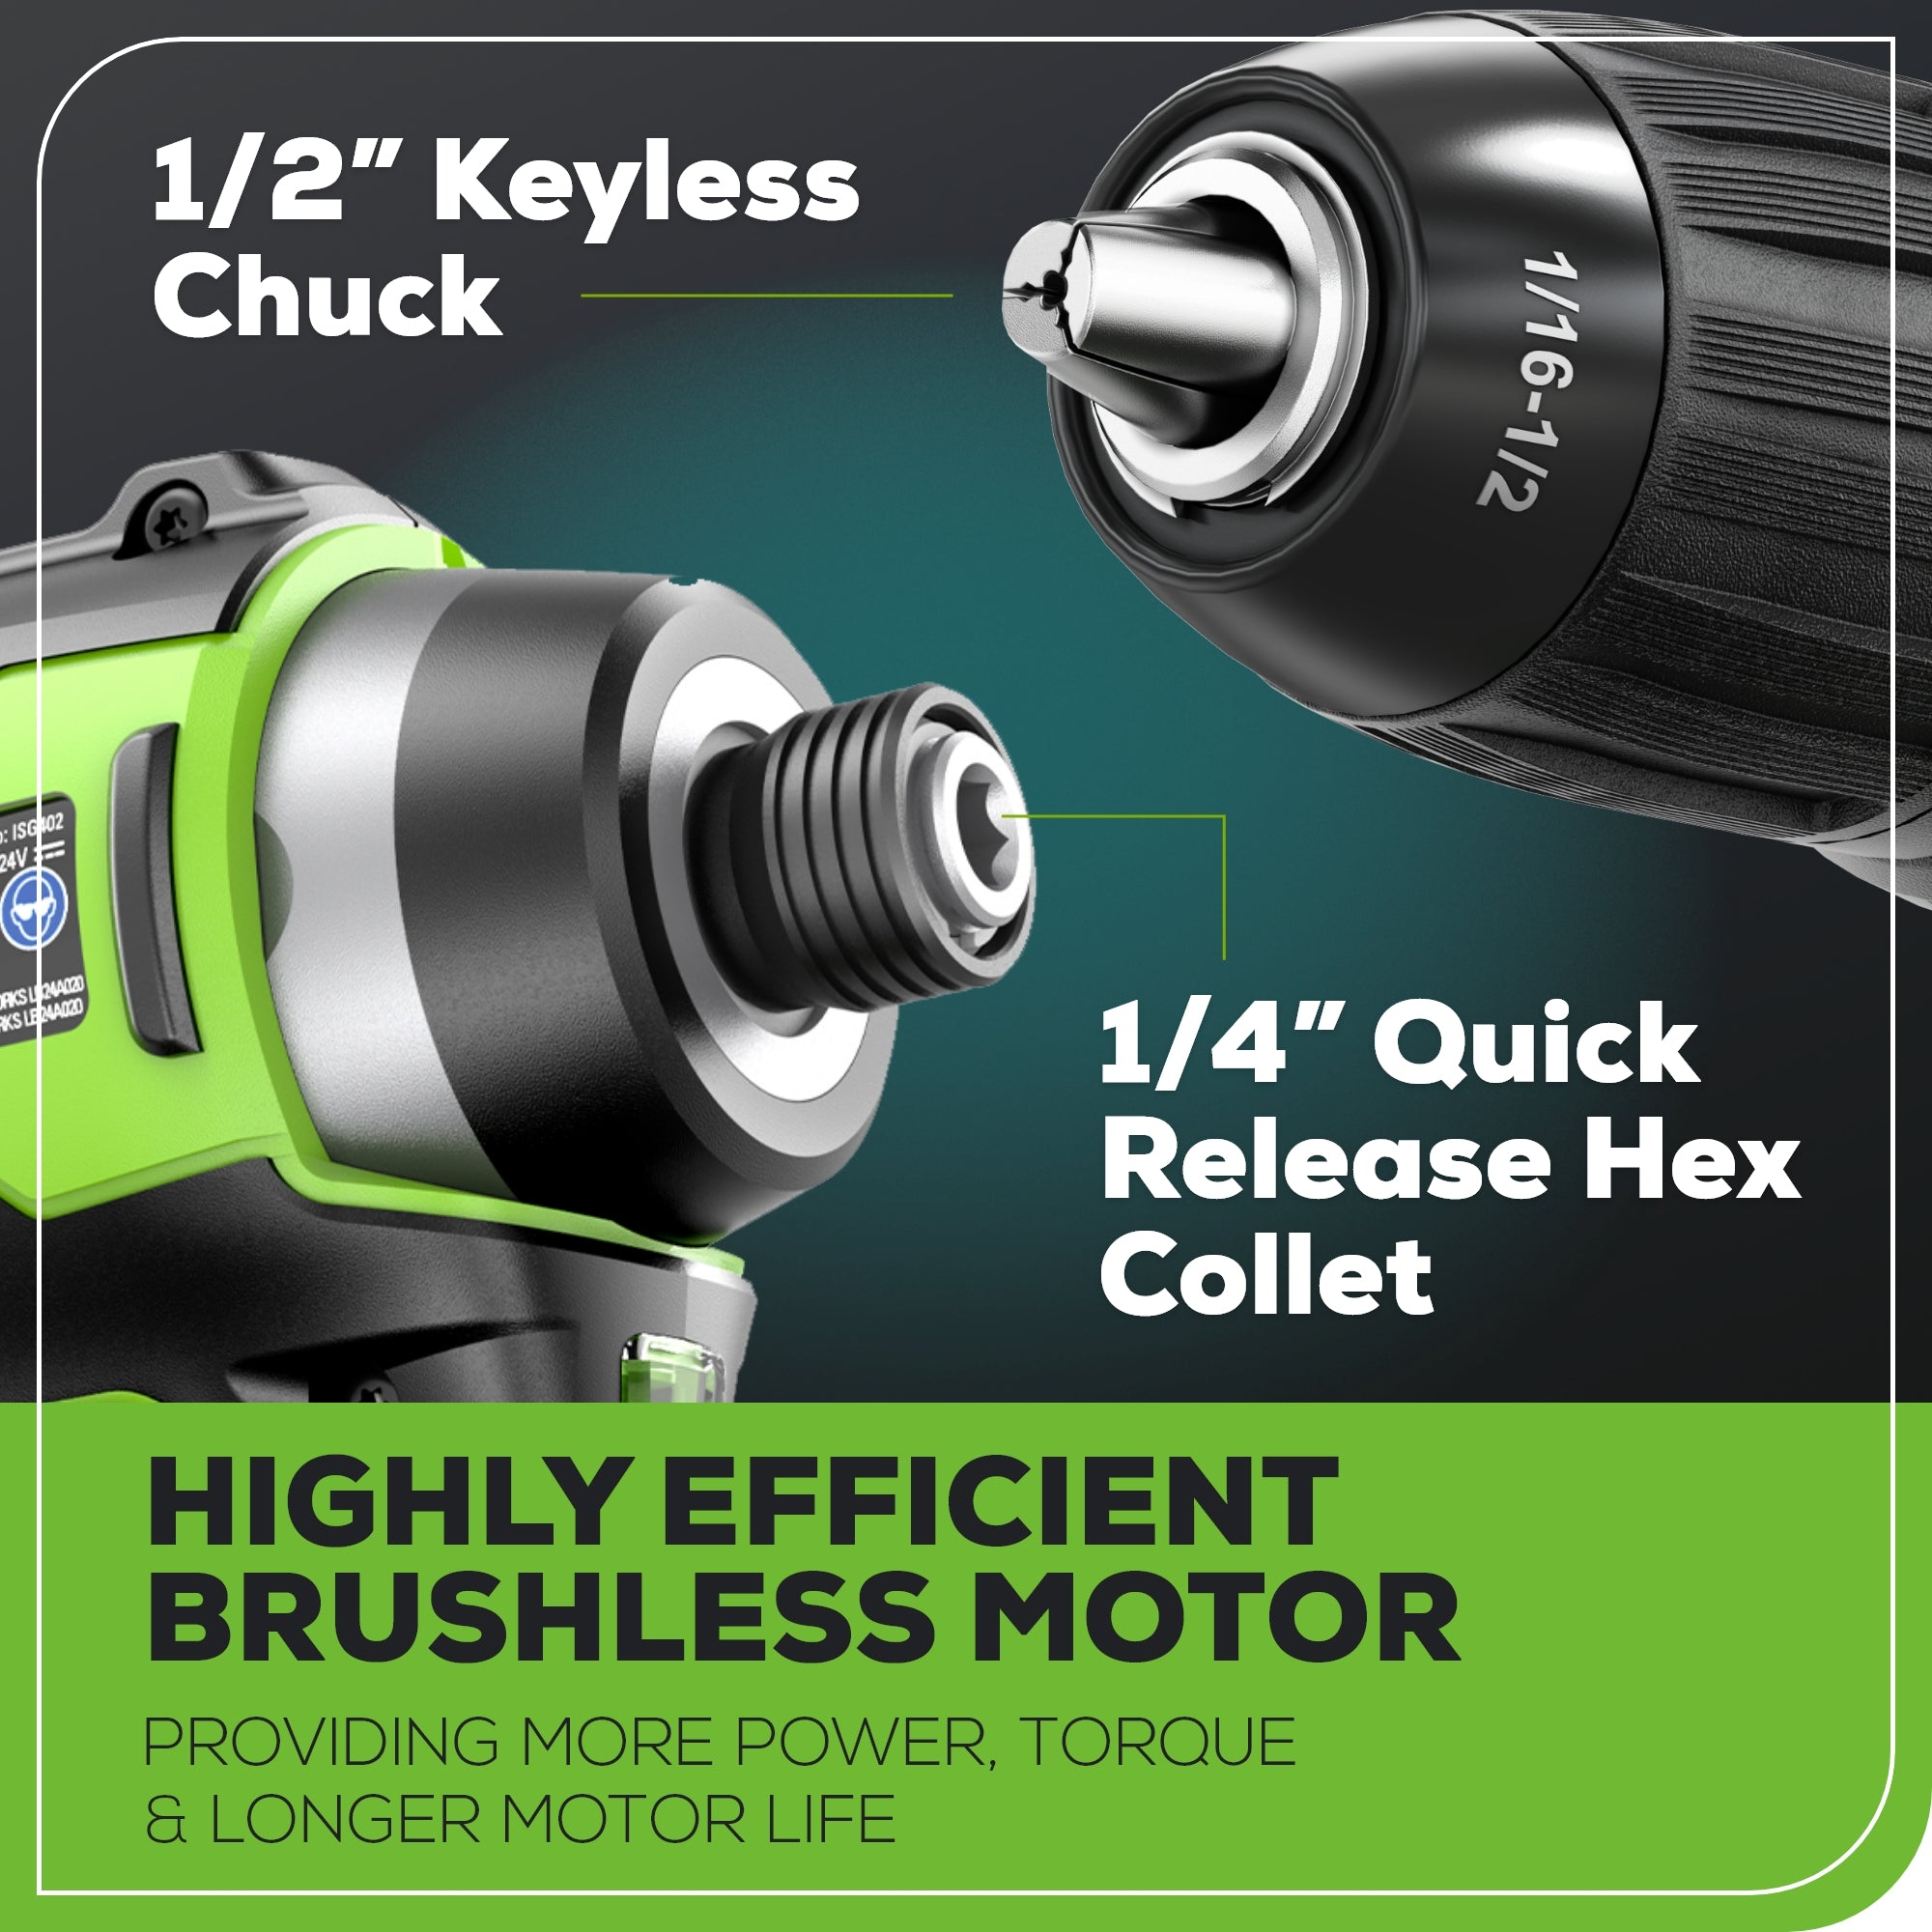 24V Brushless 1/2” Drill / Driver, 1/4” Hex Impact Driver, 8 pcs Bit Set & Bag Kit w/ (2) 2Ah Batteries & Charger